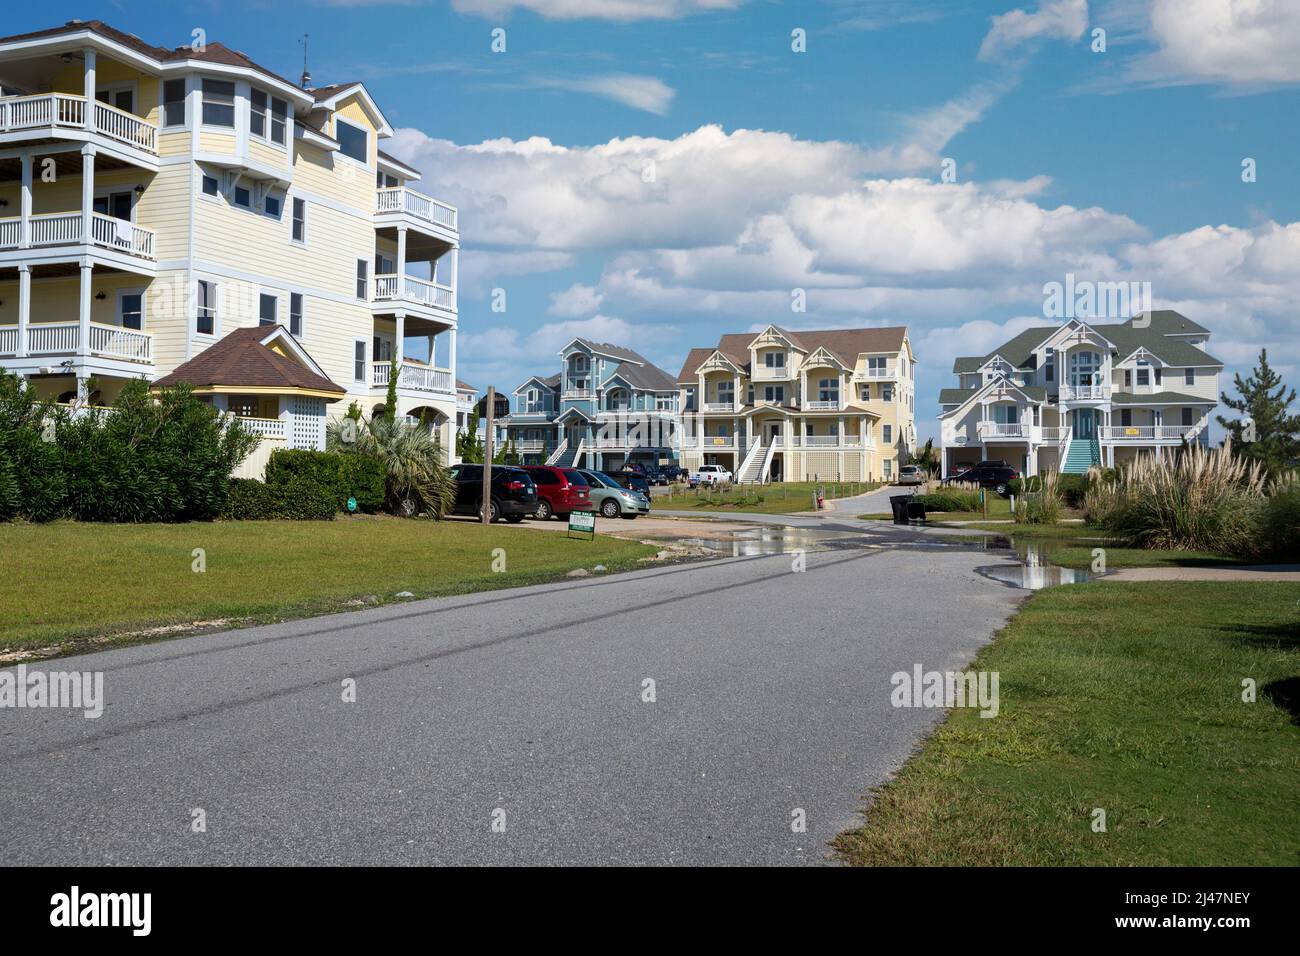 Outer Banks, Avon, North Carolina. Case vacanze vicino alla spiaggia. Foto Stock